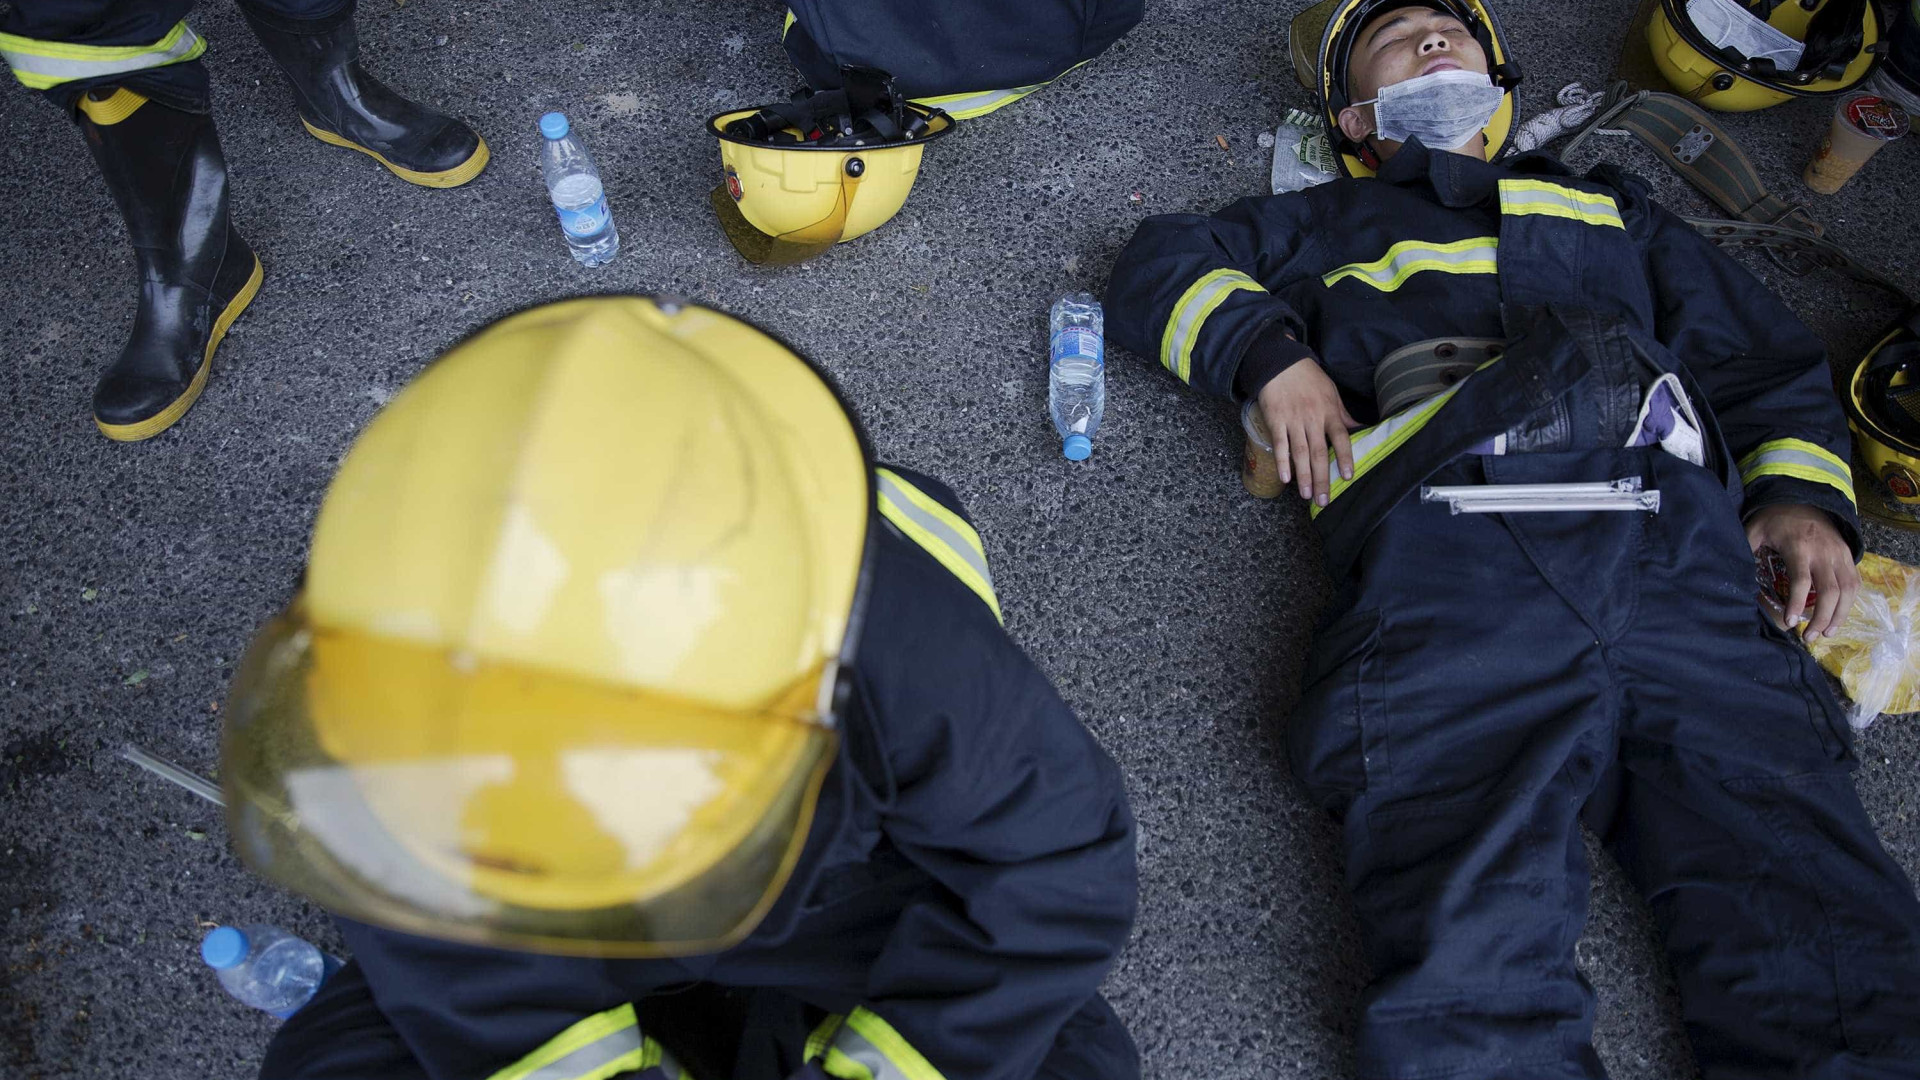 26 bombeiros morrem em combate a incêndio na China